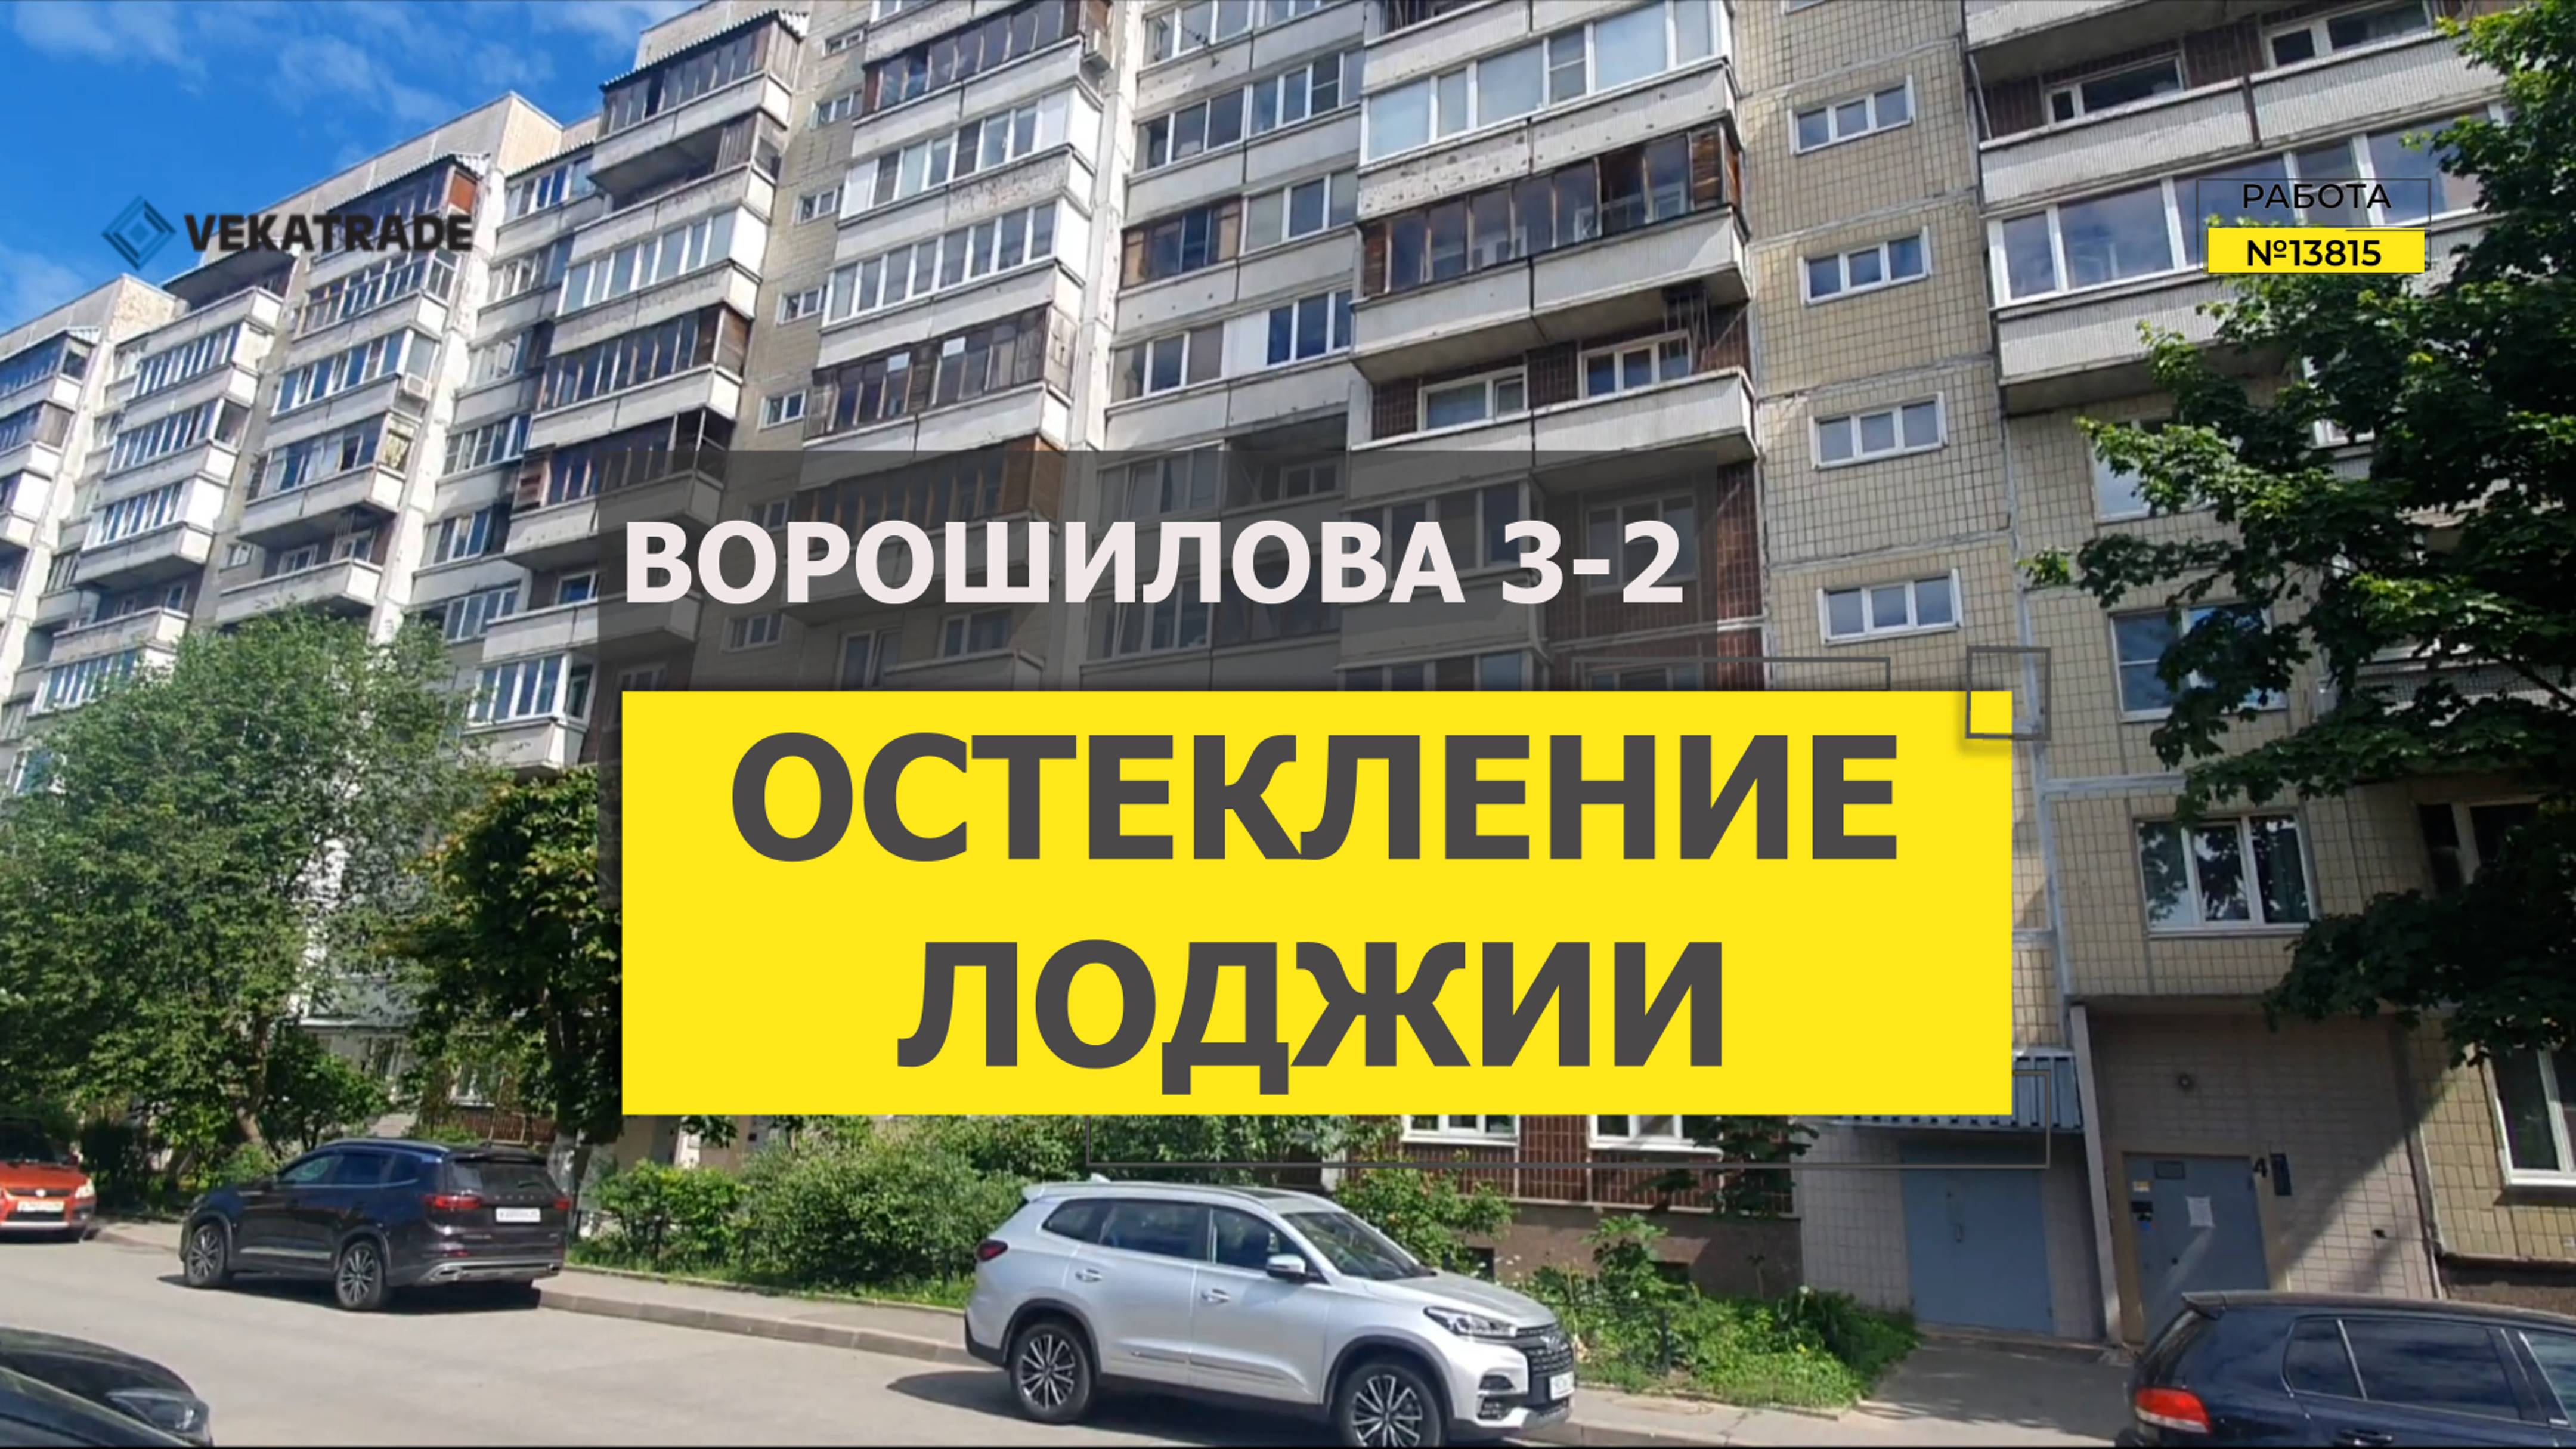 №13815 Ворошилова 3-2 Теплое остекление балкона в доме серии 601.11.88